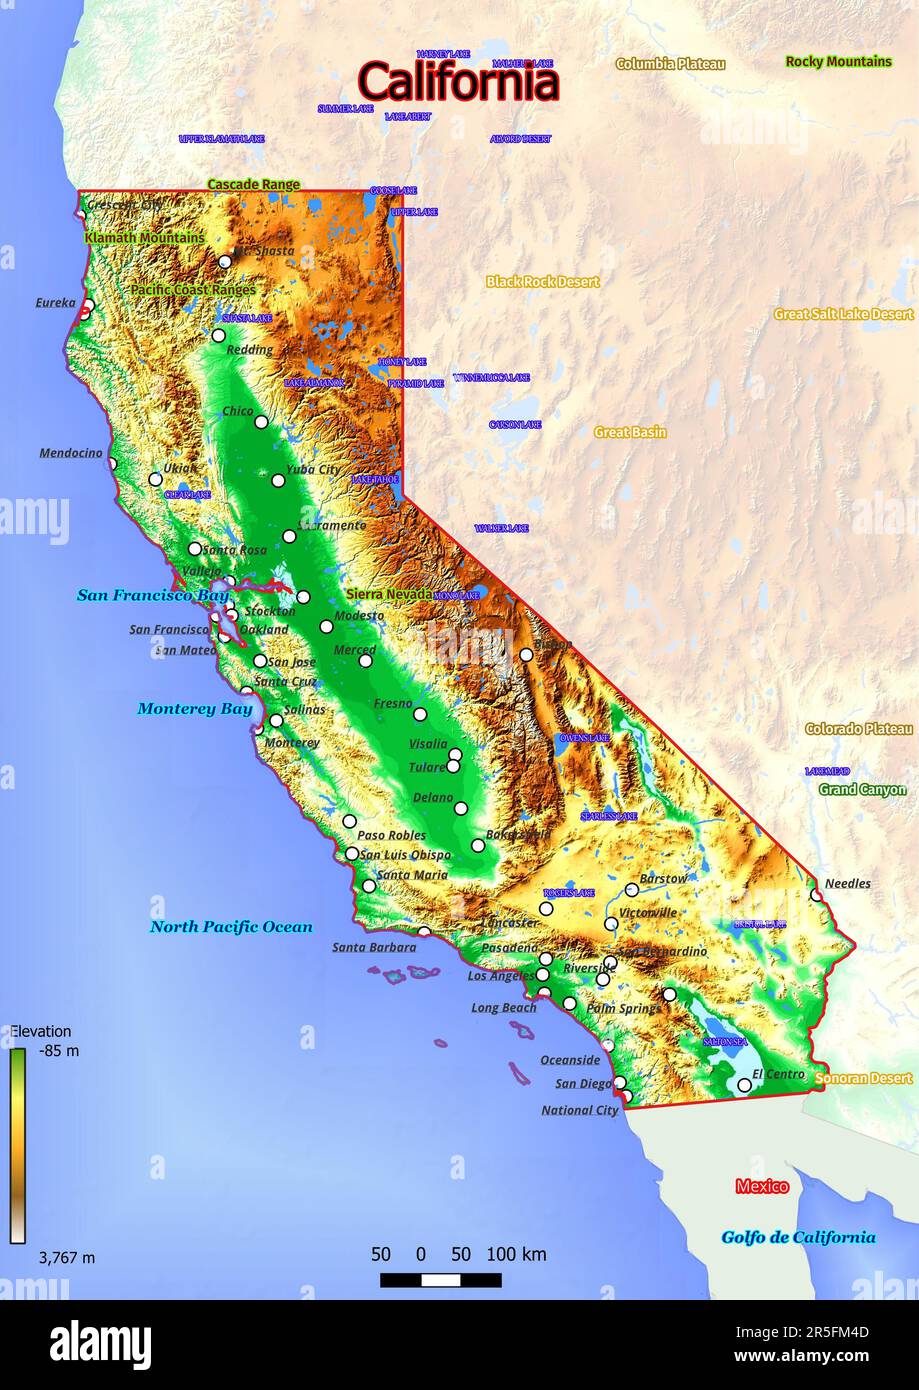 La mappa fisica della California mostra un terreno variegato con colline ondulate, fertili valli fluviali e fitte foreste. Foto Stock